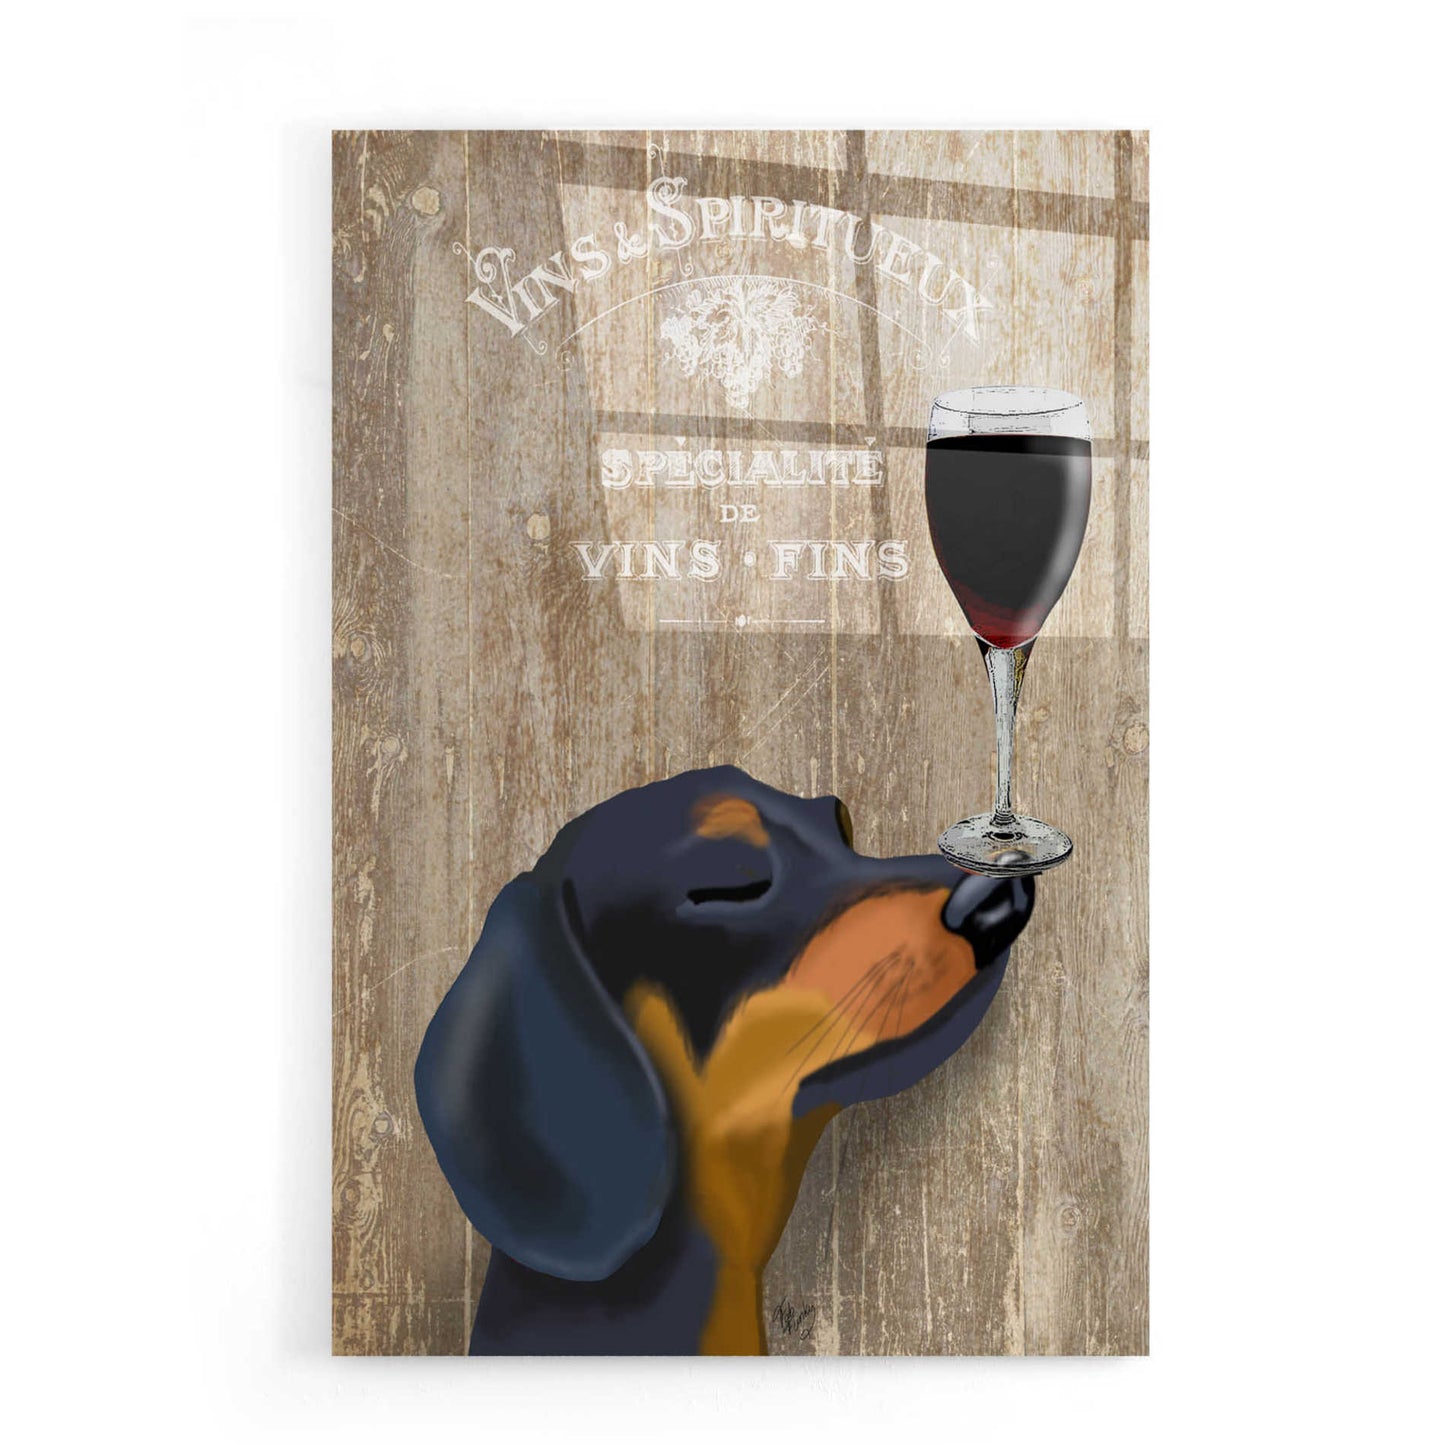 Epic Art 'Dog Au Vin Dachshund' by Fab Funky, Acrylic Glass Wall Art,16x24